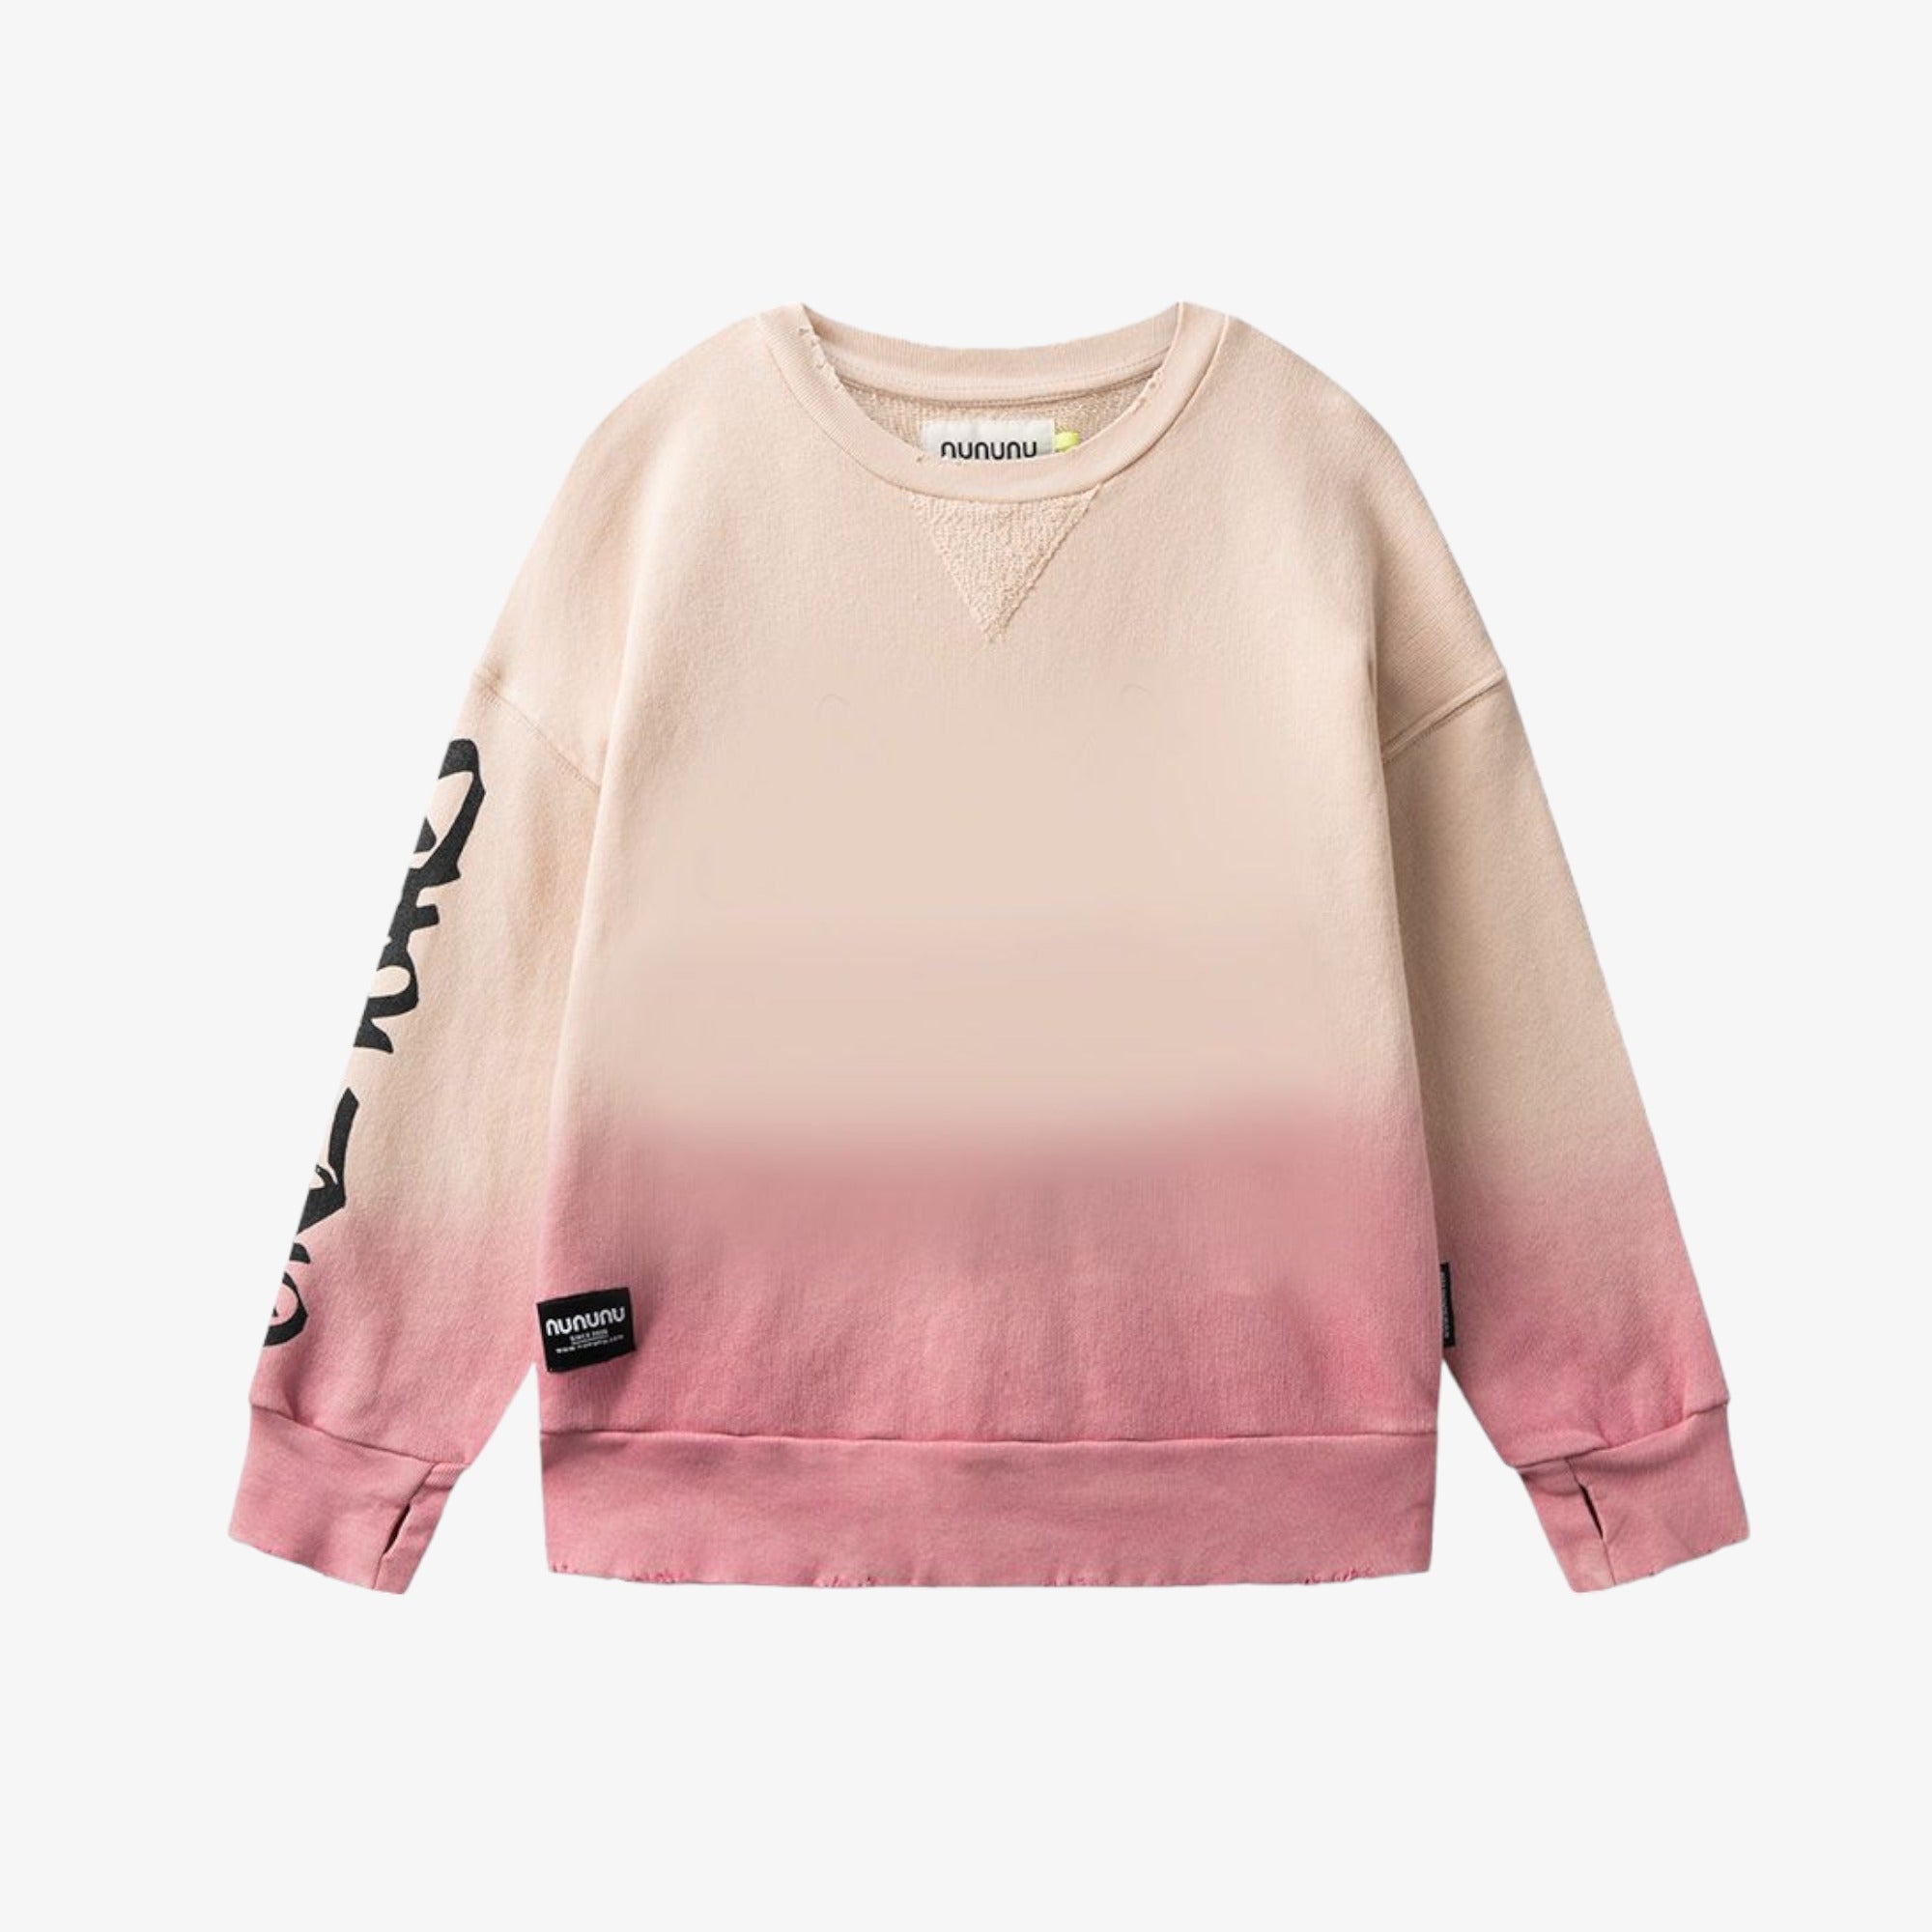 Nununu Ombre Sweatshirt - Hot Pink